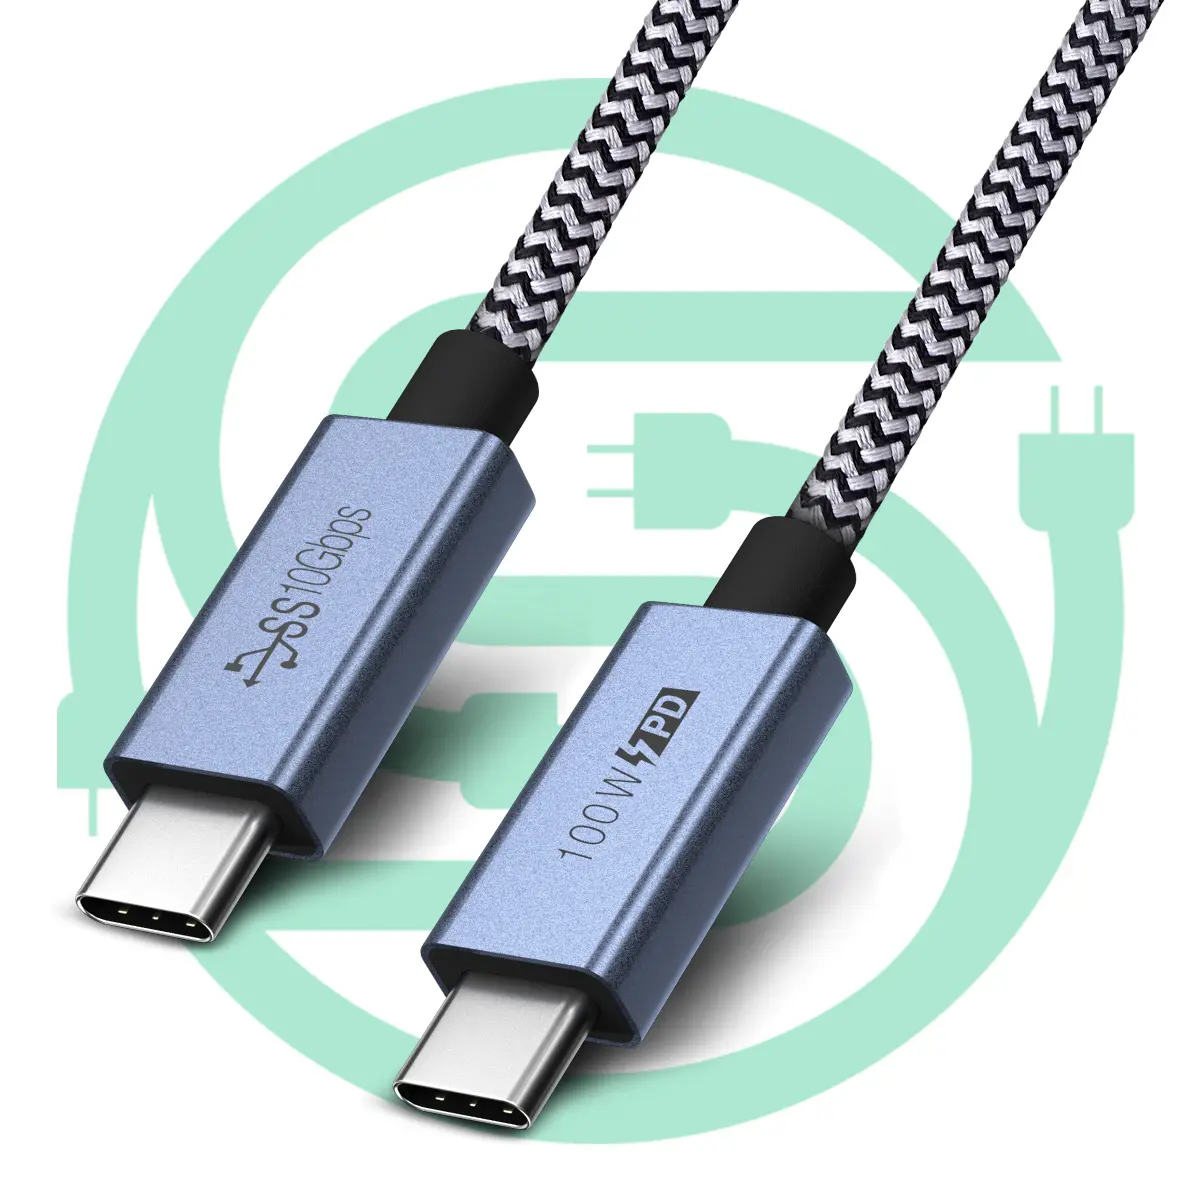 نوع C شاحن 10 ft USB C كابل سريع شاحن متوافق النايلون مضفر طويلة USB C شاحن الحبل لسامسونج غالاكسي S9 S10 S8 زائد